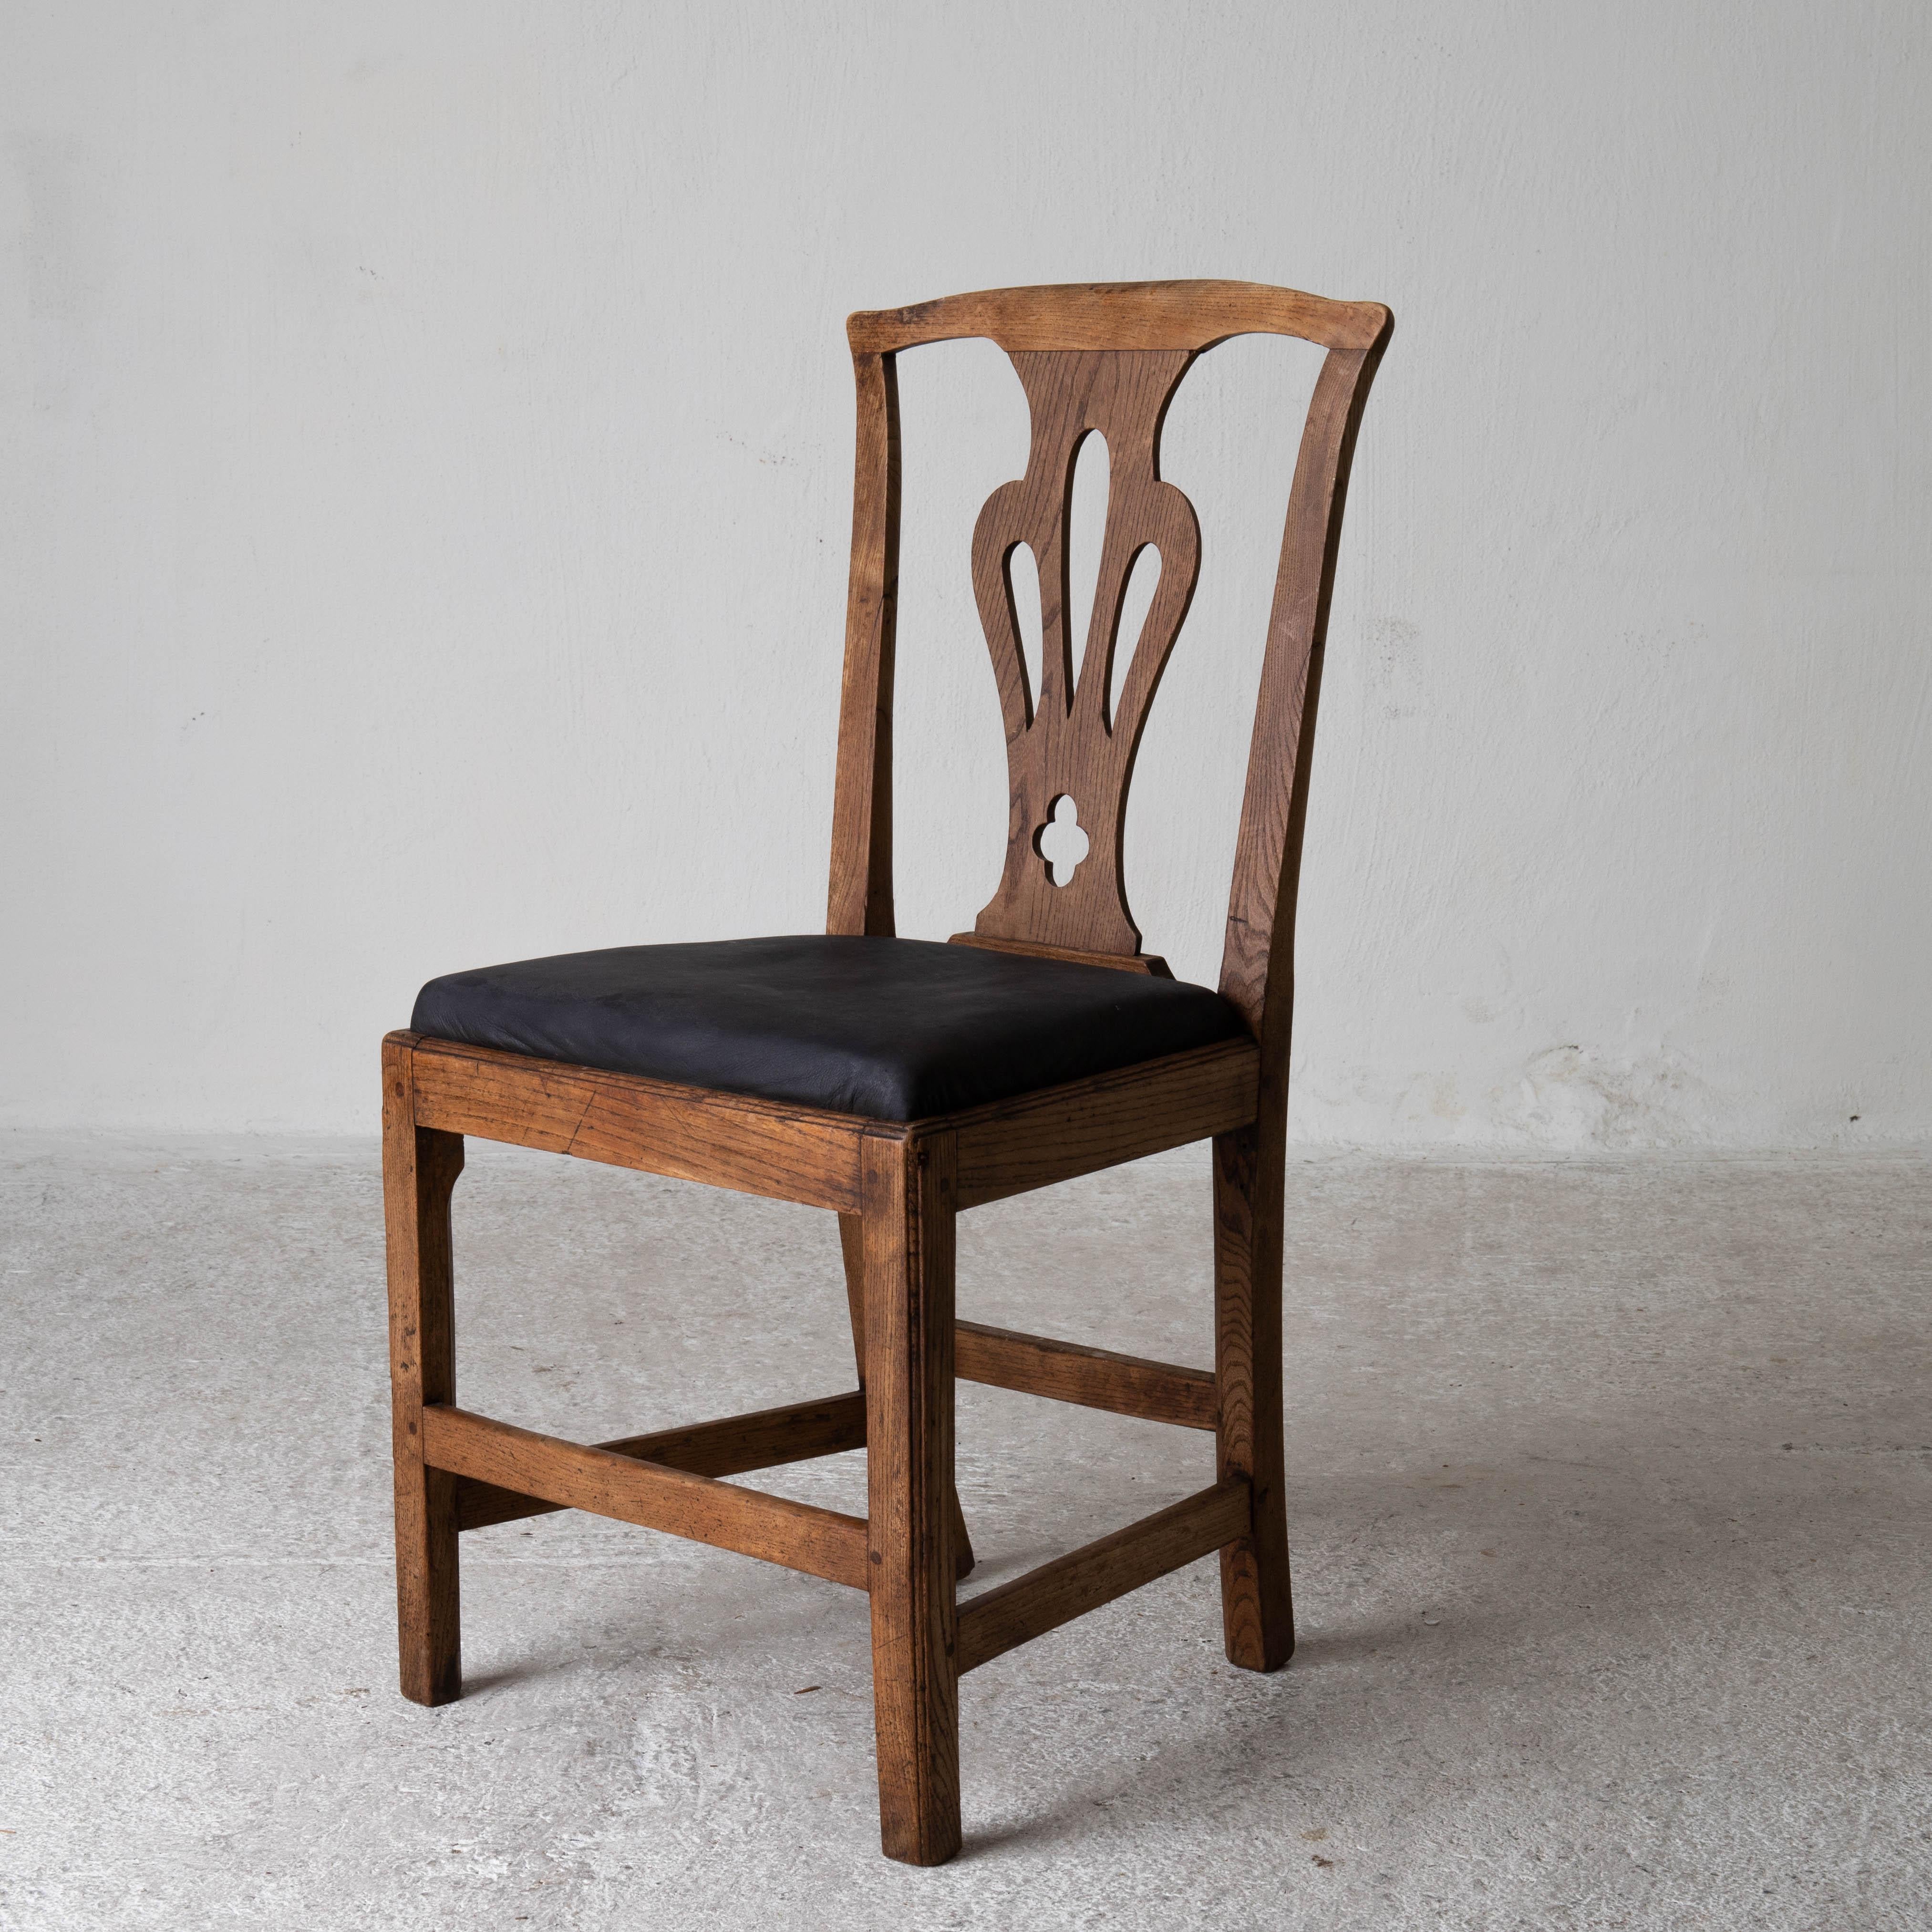 Esszimmerstühle Englisch Satz von 6 montiert Chippendale England. Ein Satz von 6 Chippendale-Stühlen, die im 18. Jahrhundert in England hergestellt wurden. 3 + 2 + 1. 

3 Stühle: H 38